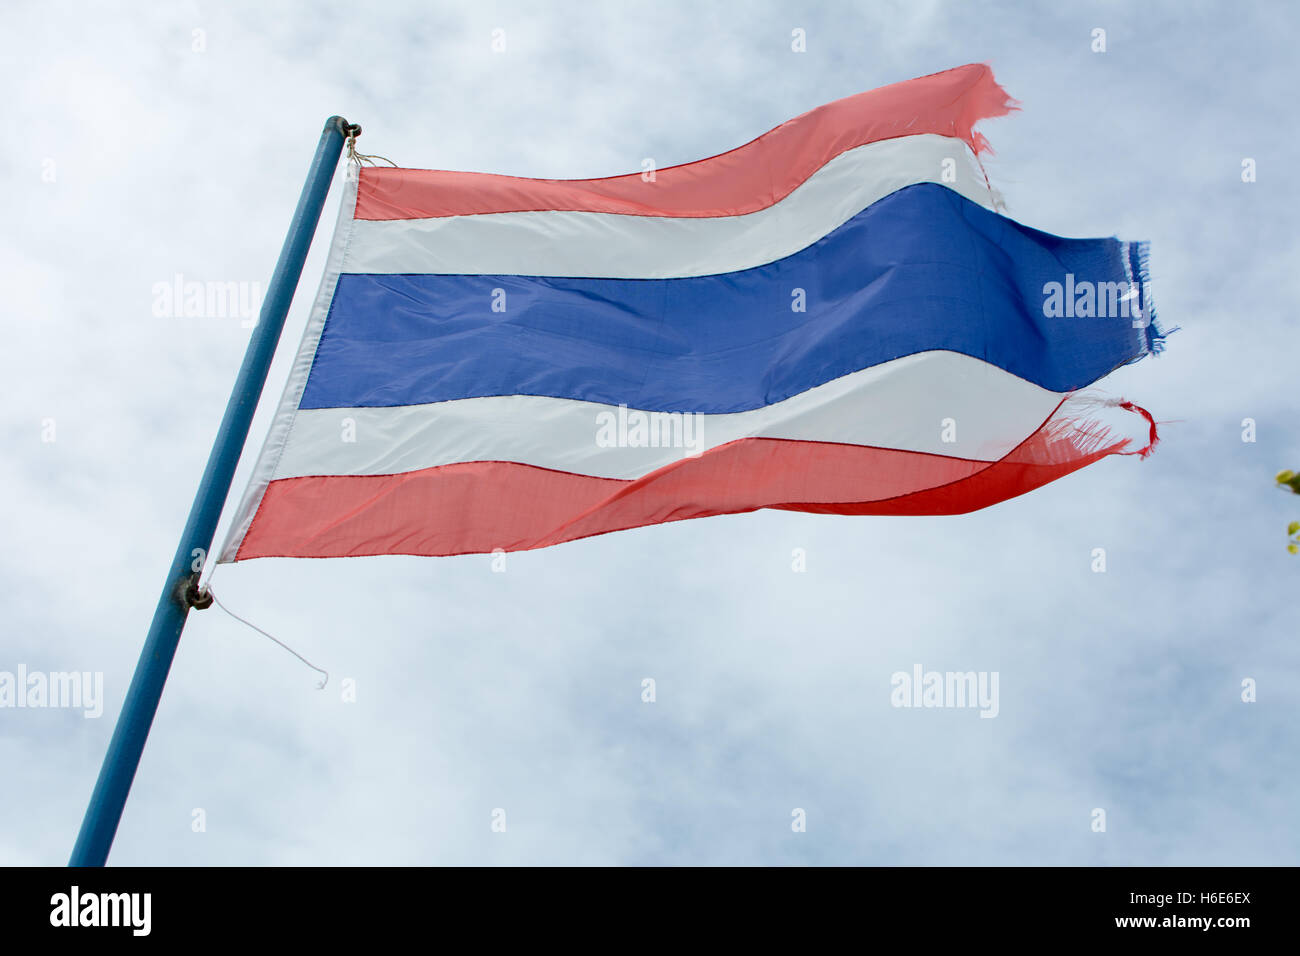 L'ancien royaume de Thaïlande ondulées flag against blue sky Banque D'Images